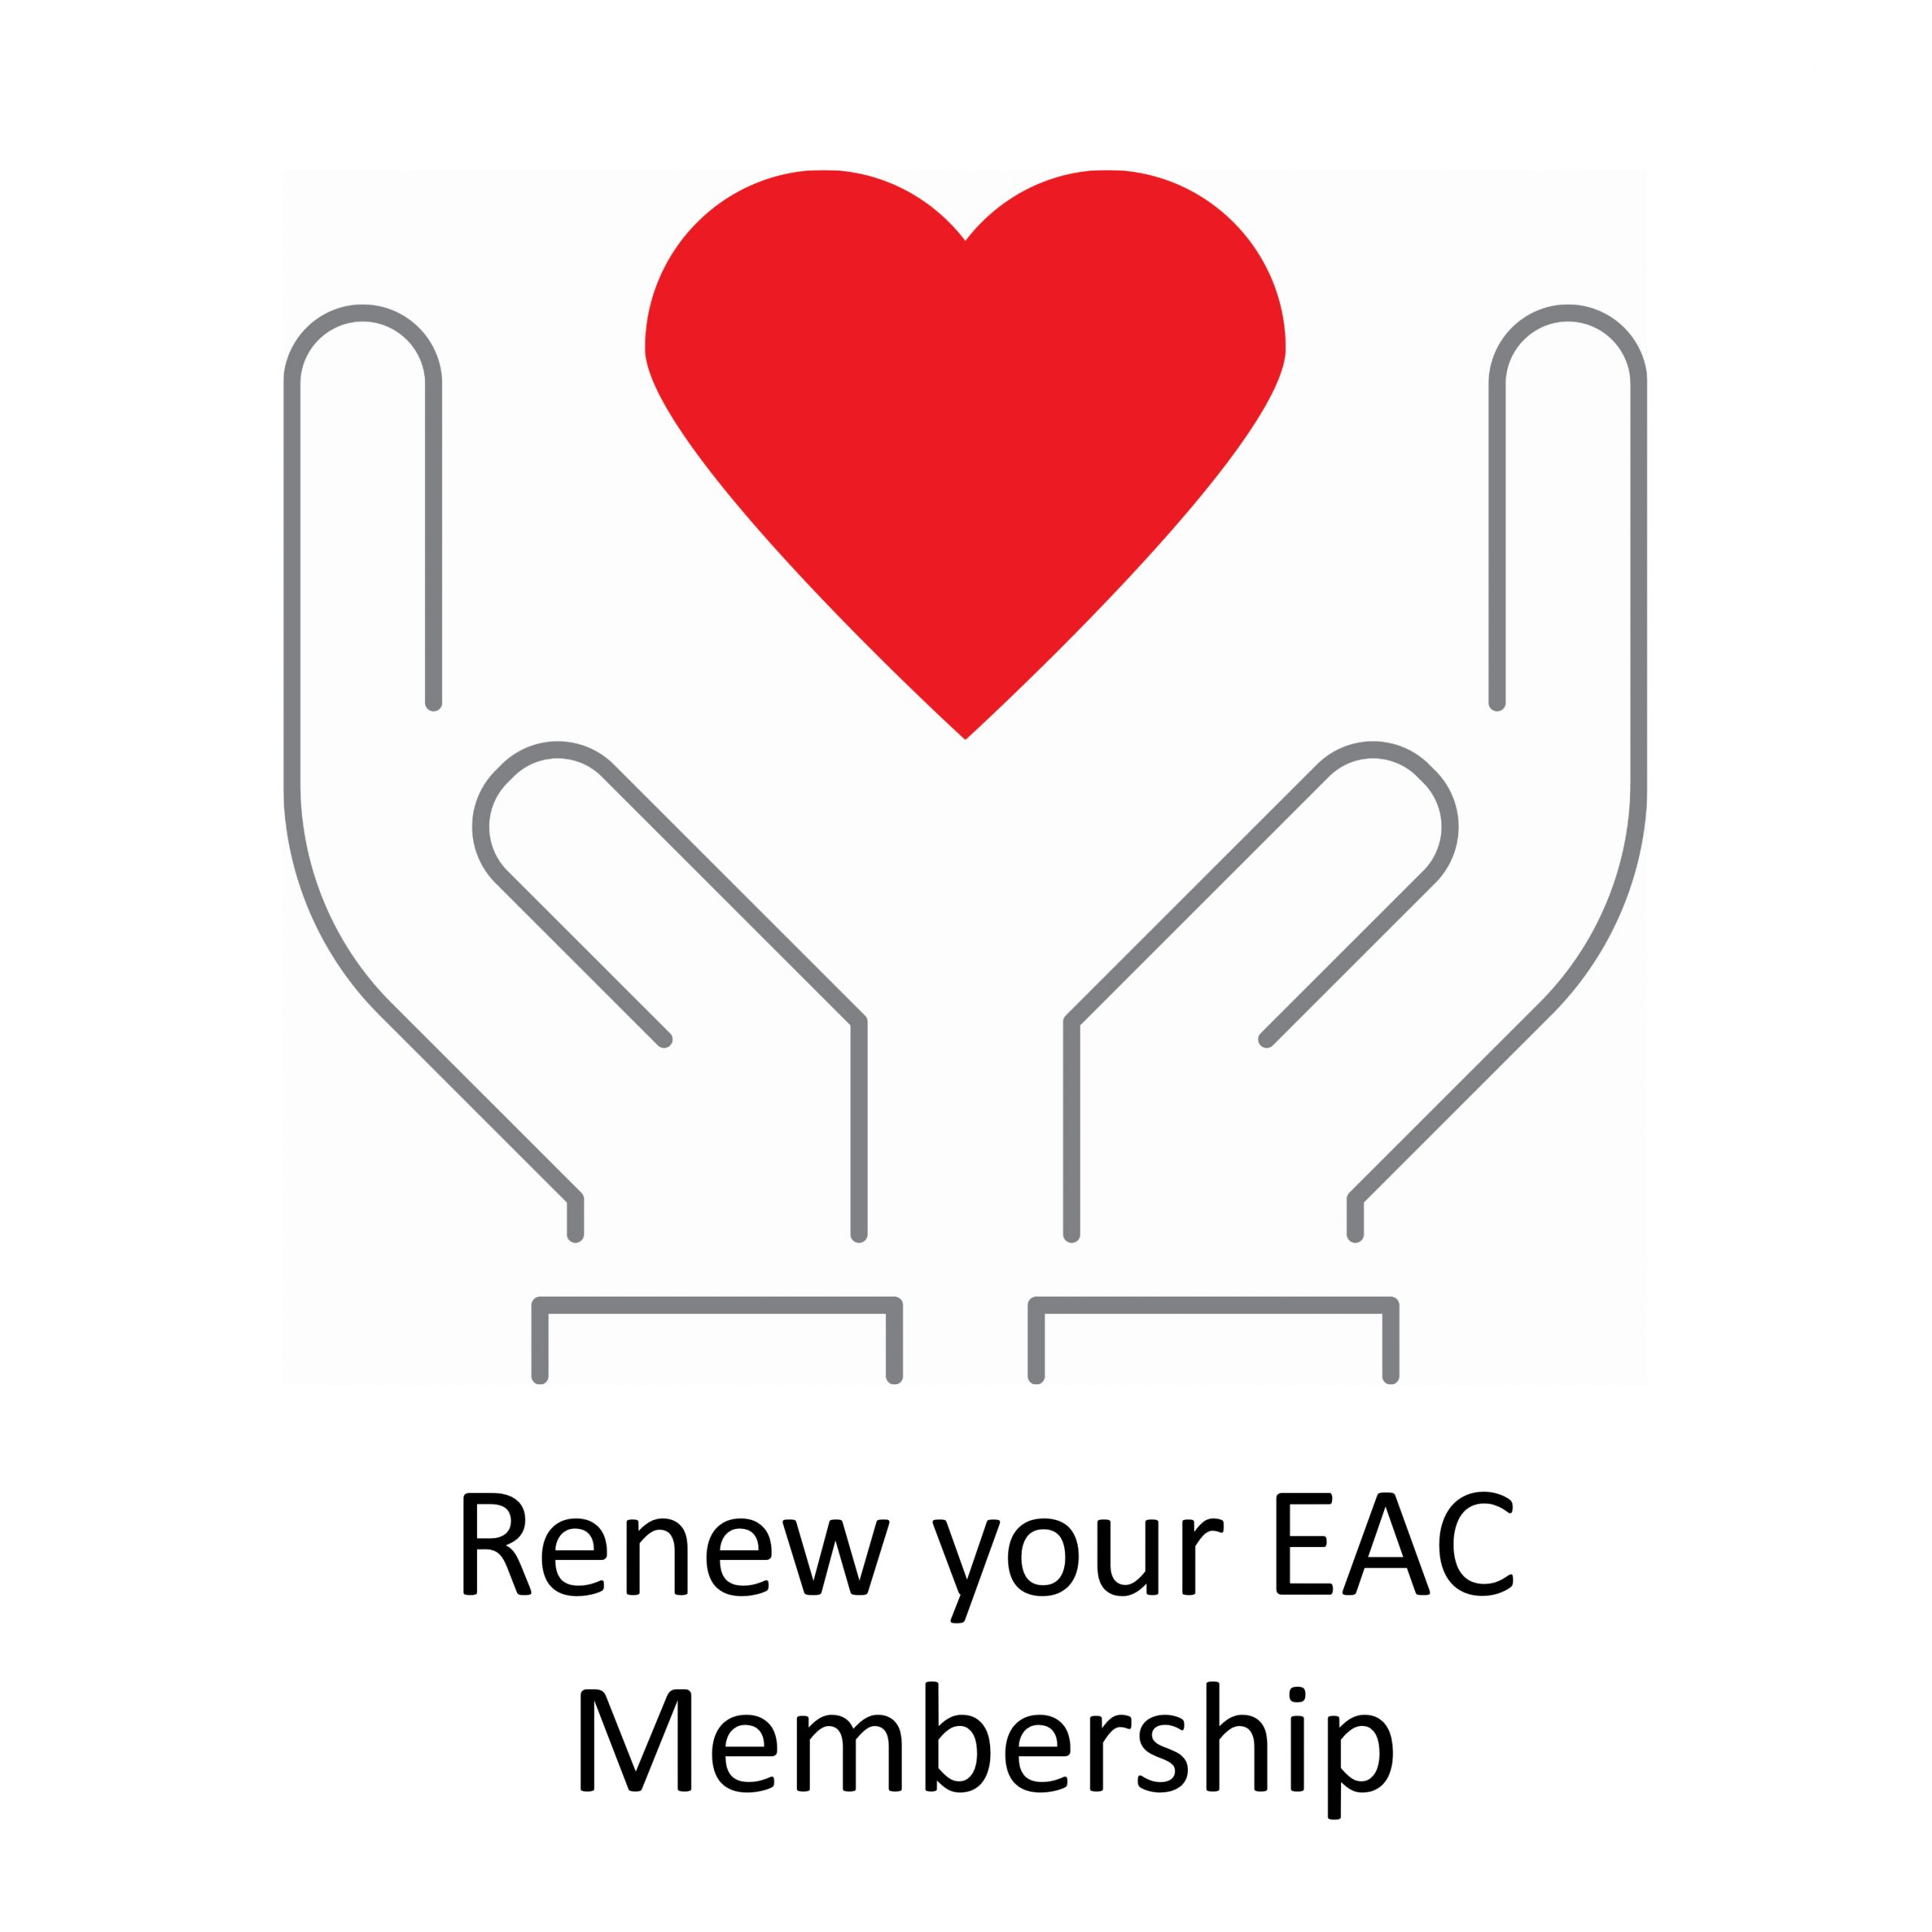 Renew Your EAC Membership